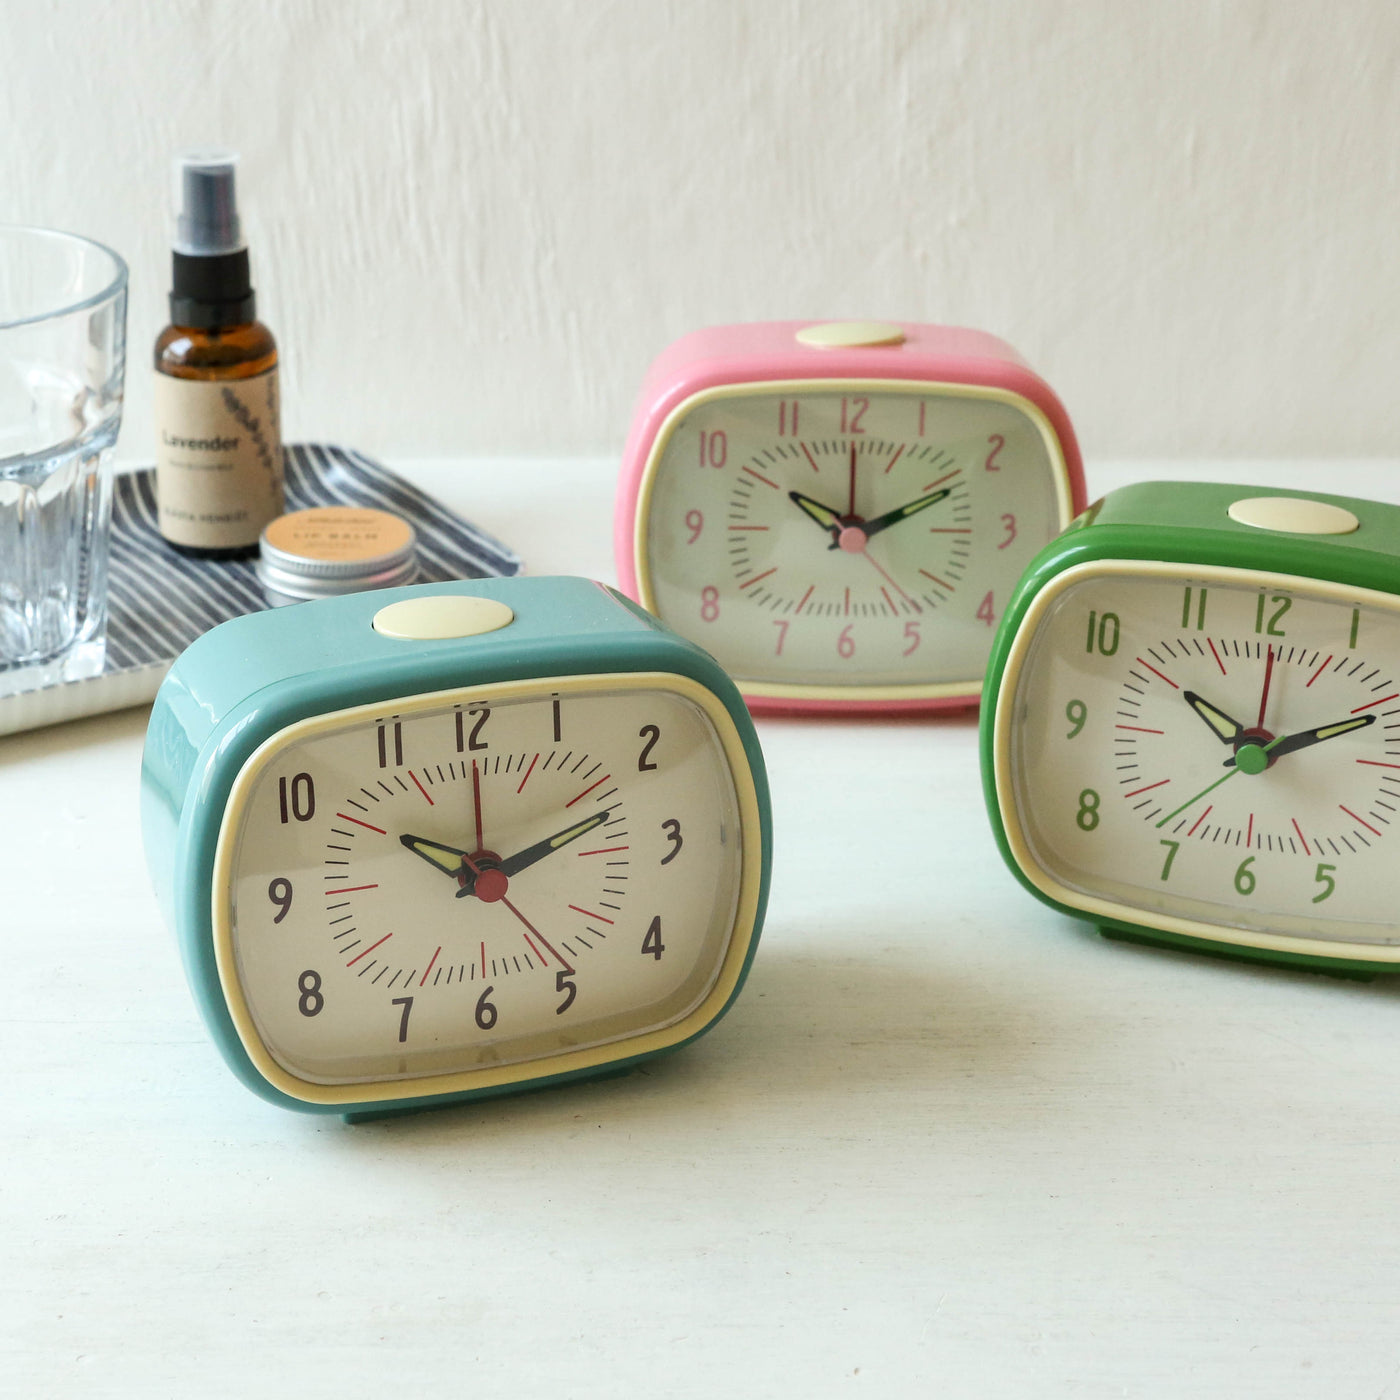 Retro Bakelite Style Alarm Clock